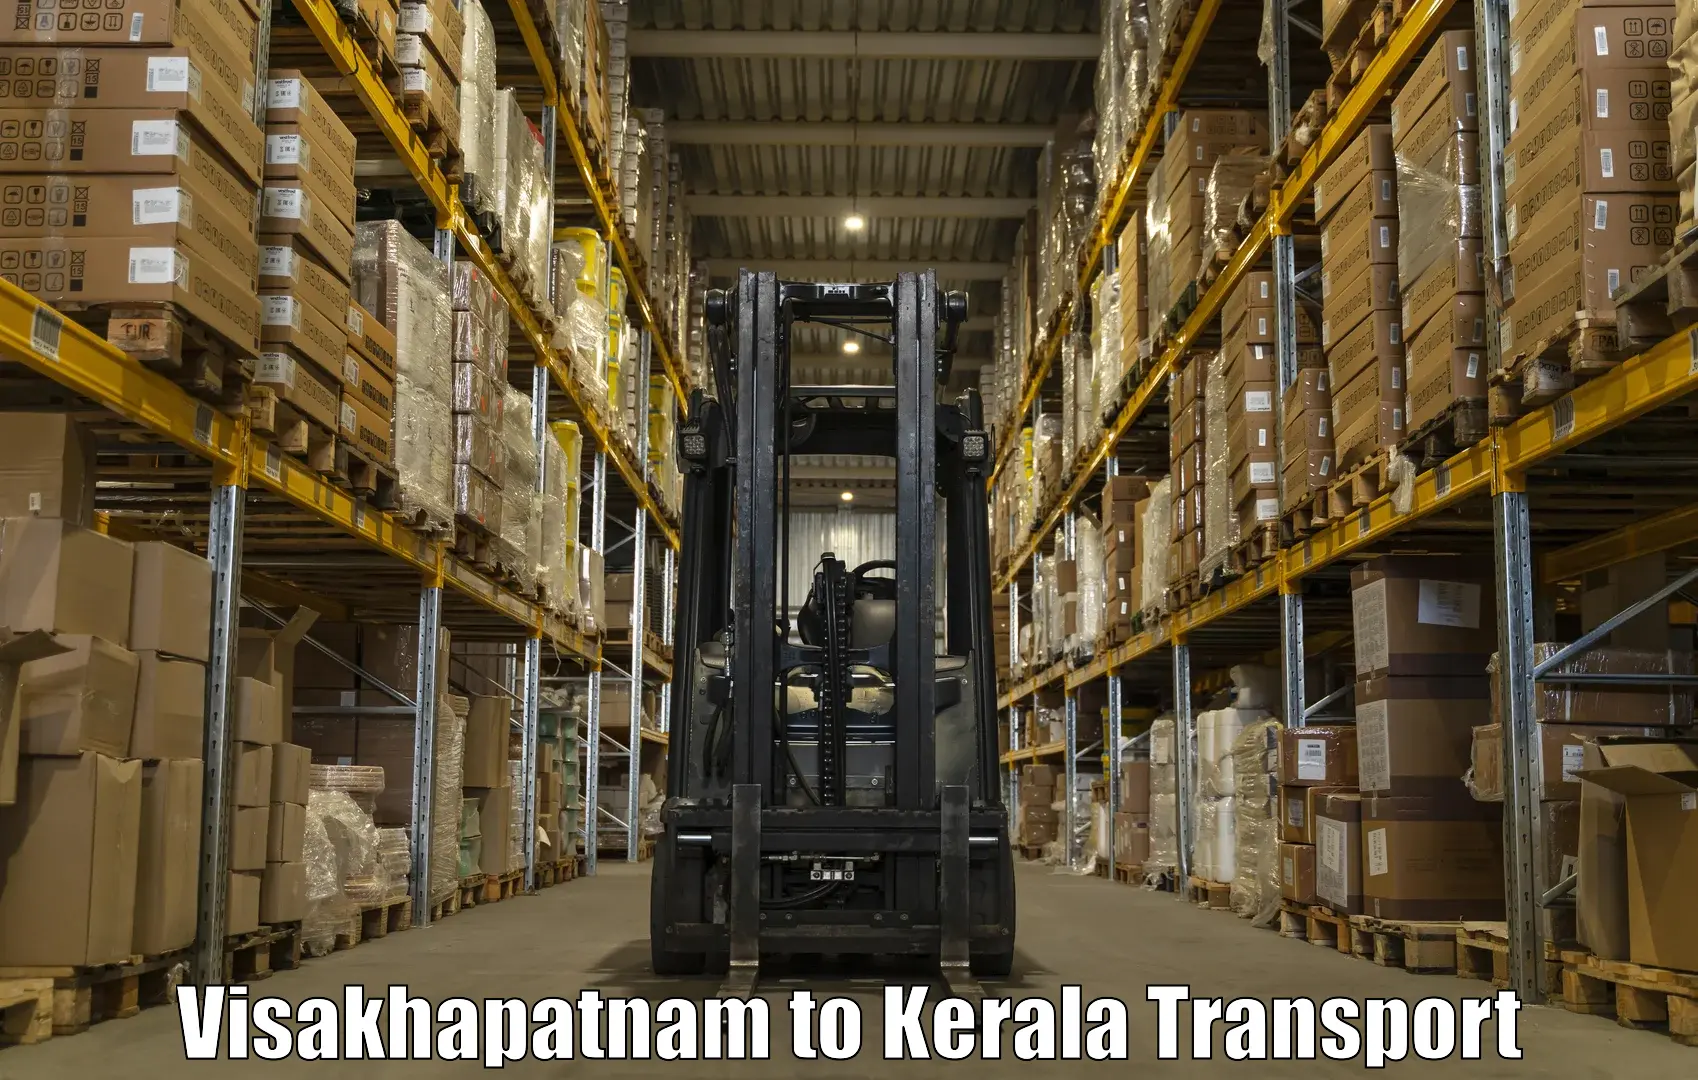 Nationwide transport services Visakhapatnam to Kalluvathukkal